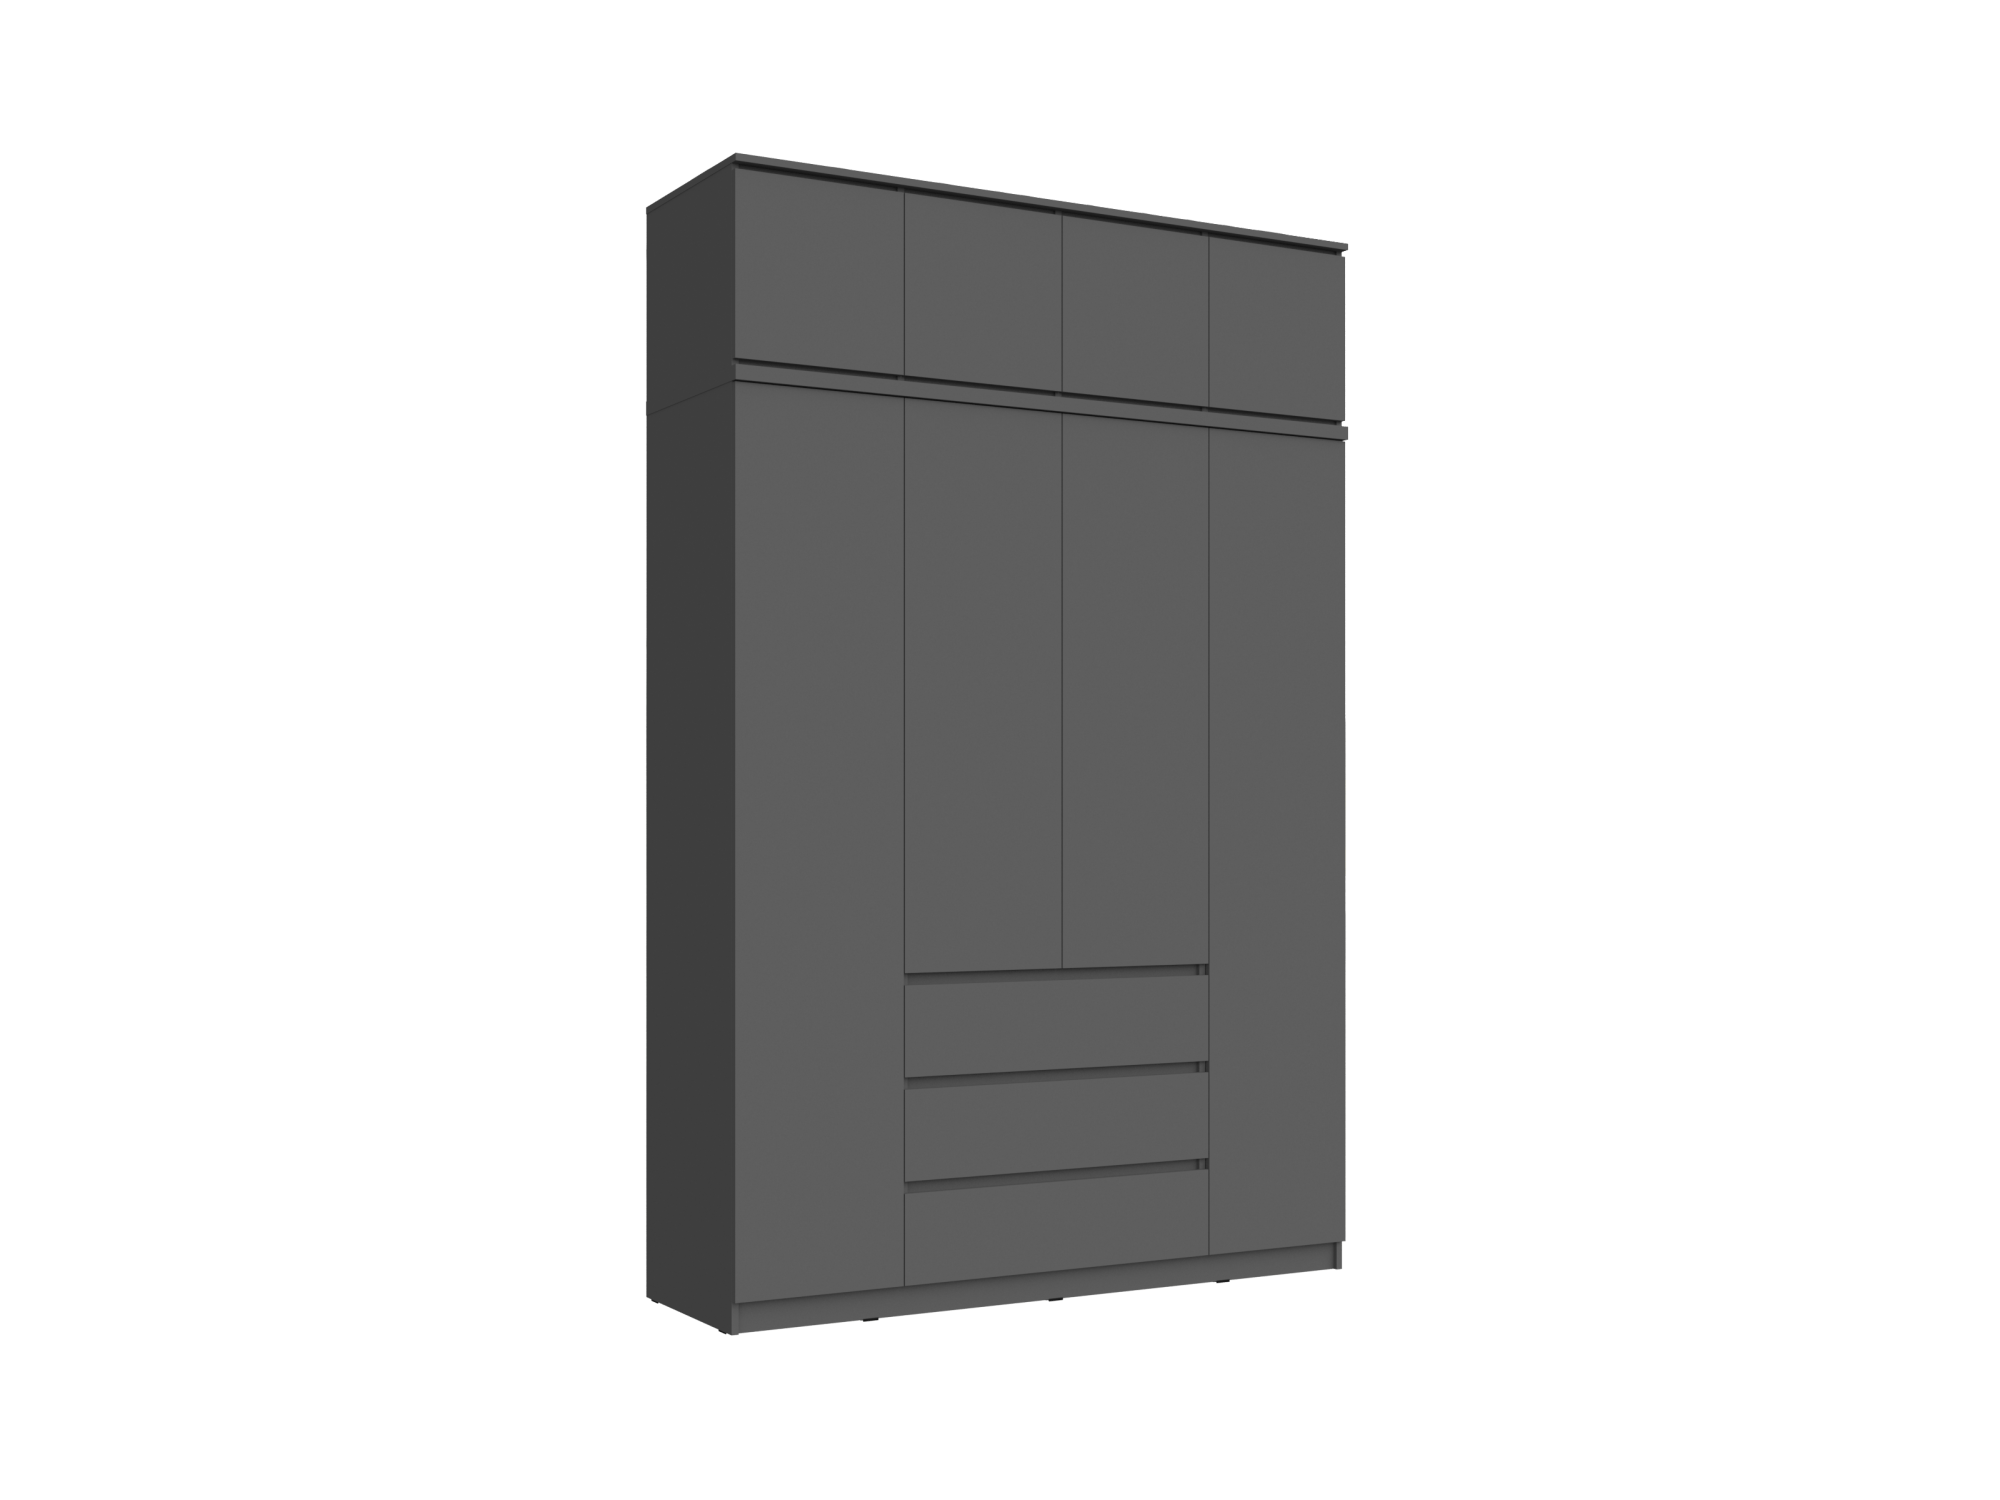 Челси Шкаф 1600 + антресоль 1600 (Графит, Графит) Черный, ЛДСП челси шкаф угловой прямой графит графит графит черный лдсп